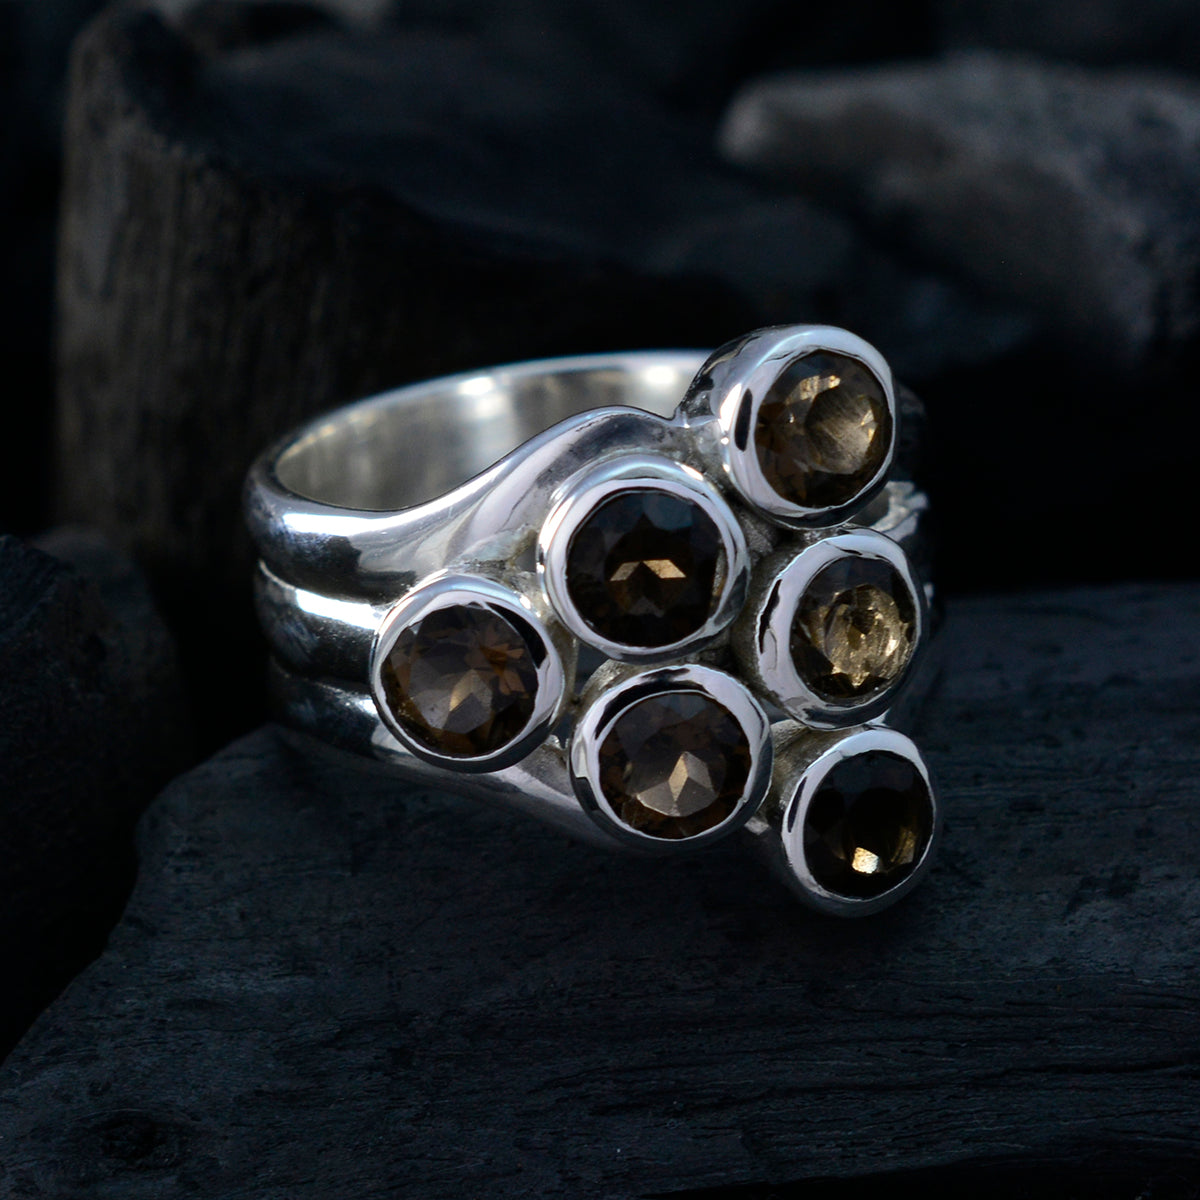 riyo presentabile gemma quarzo fumé anello in argento massiccio mondo dei gioielli